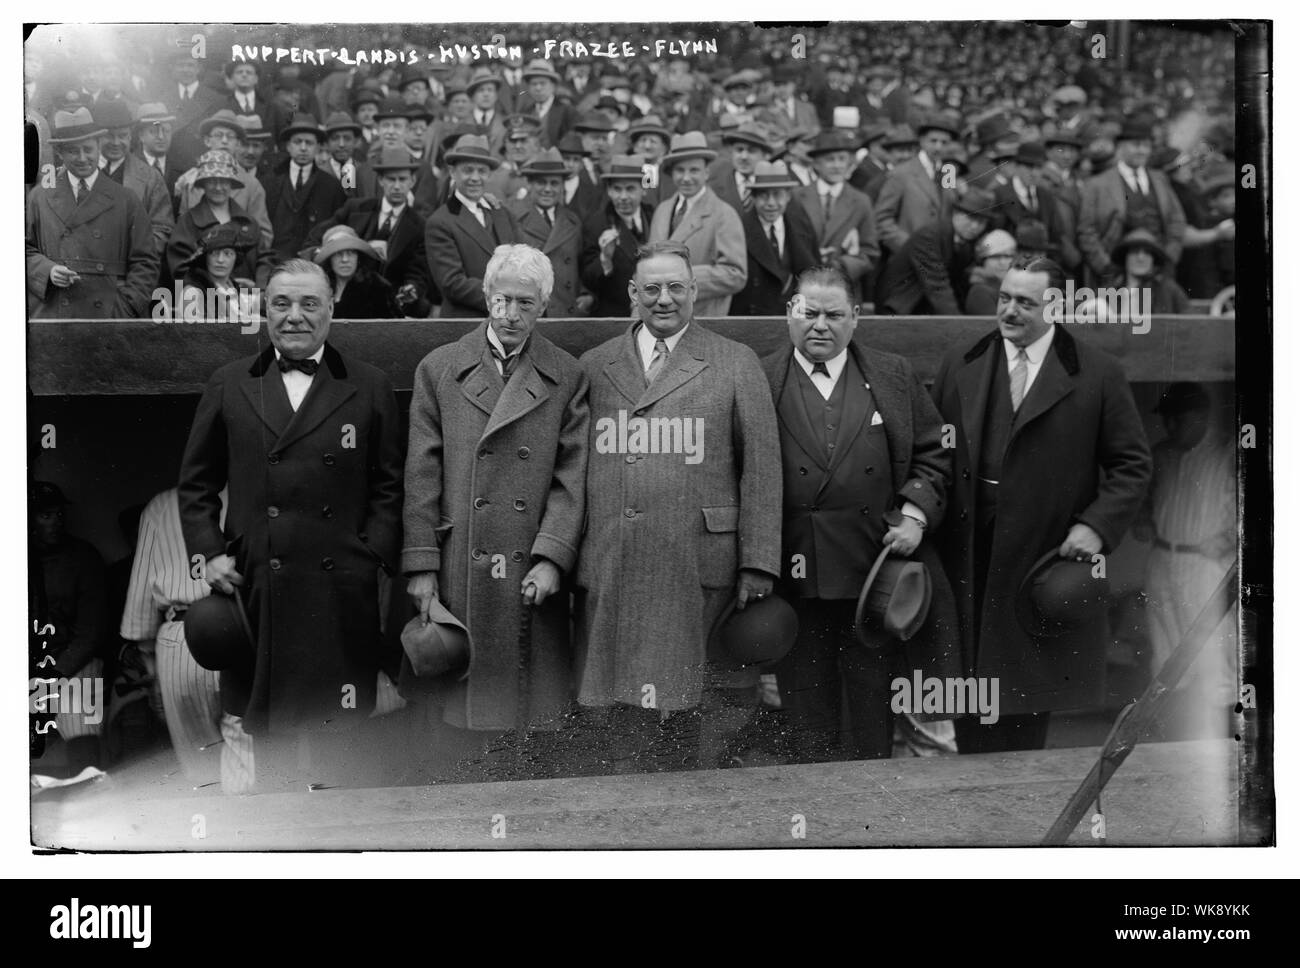 Jakob Ruppert, Richter M. Kenesaw Landis, Tillinghast Huston, Harry Frazee,? Flynn, im Yankee Stadium, 4/18/23 (Baseball) Stockfoto